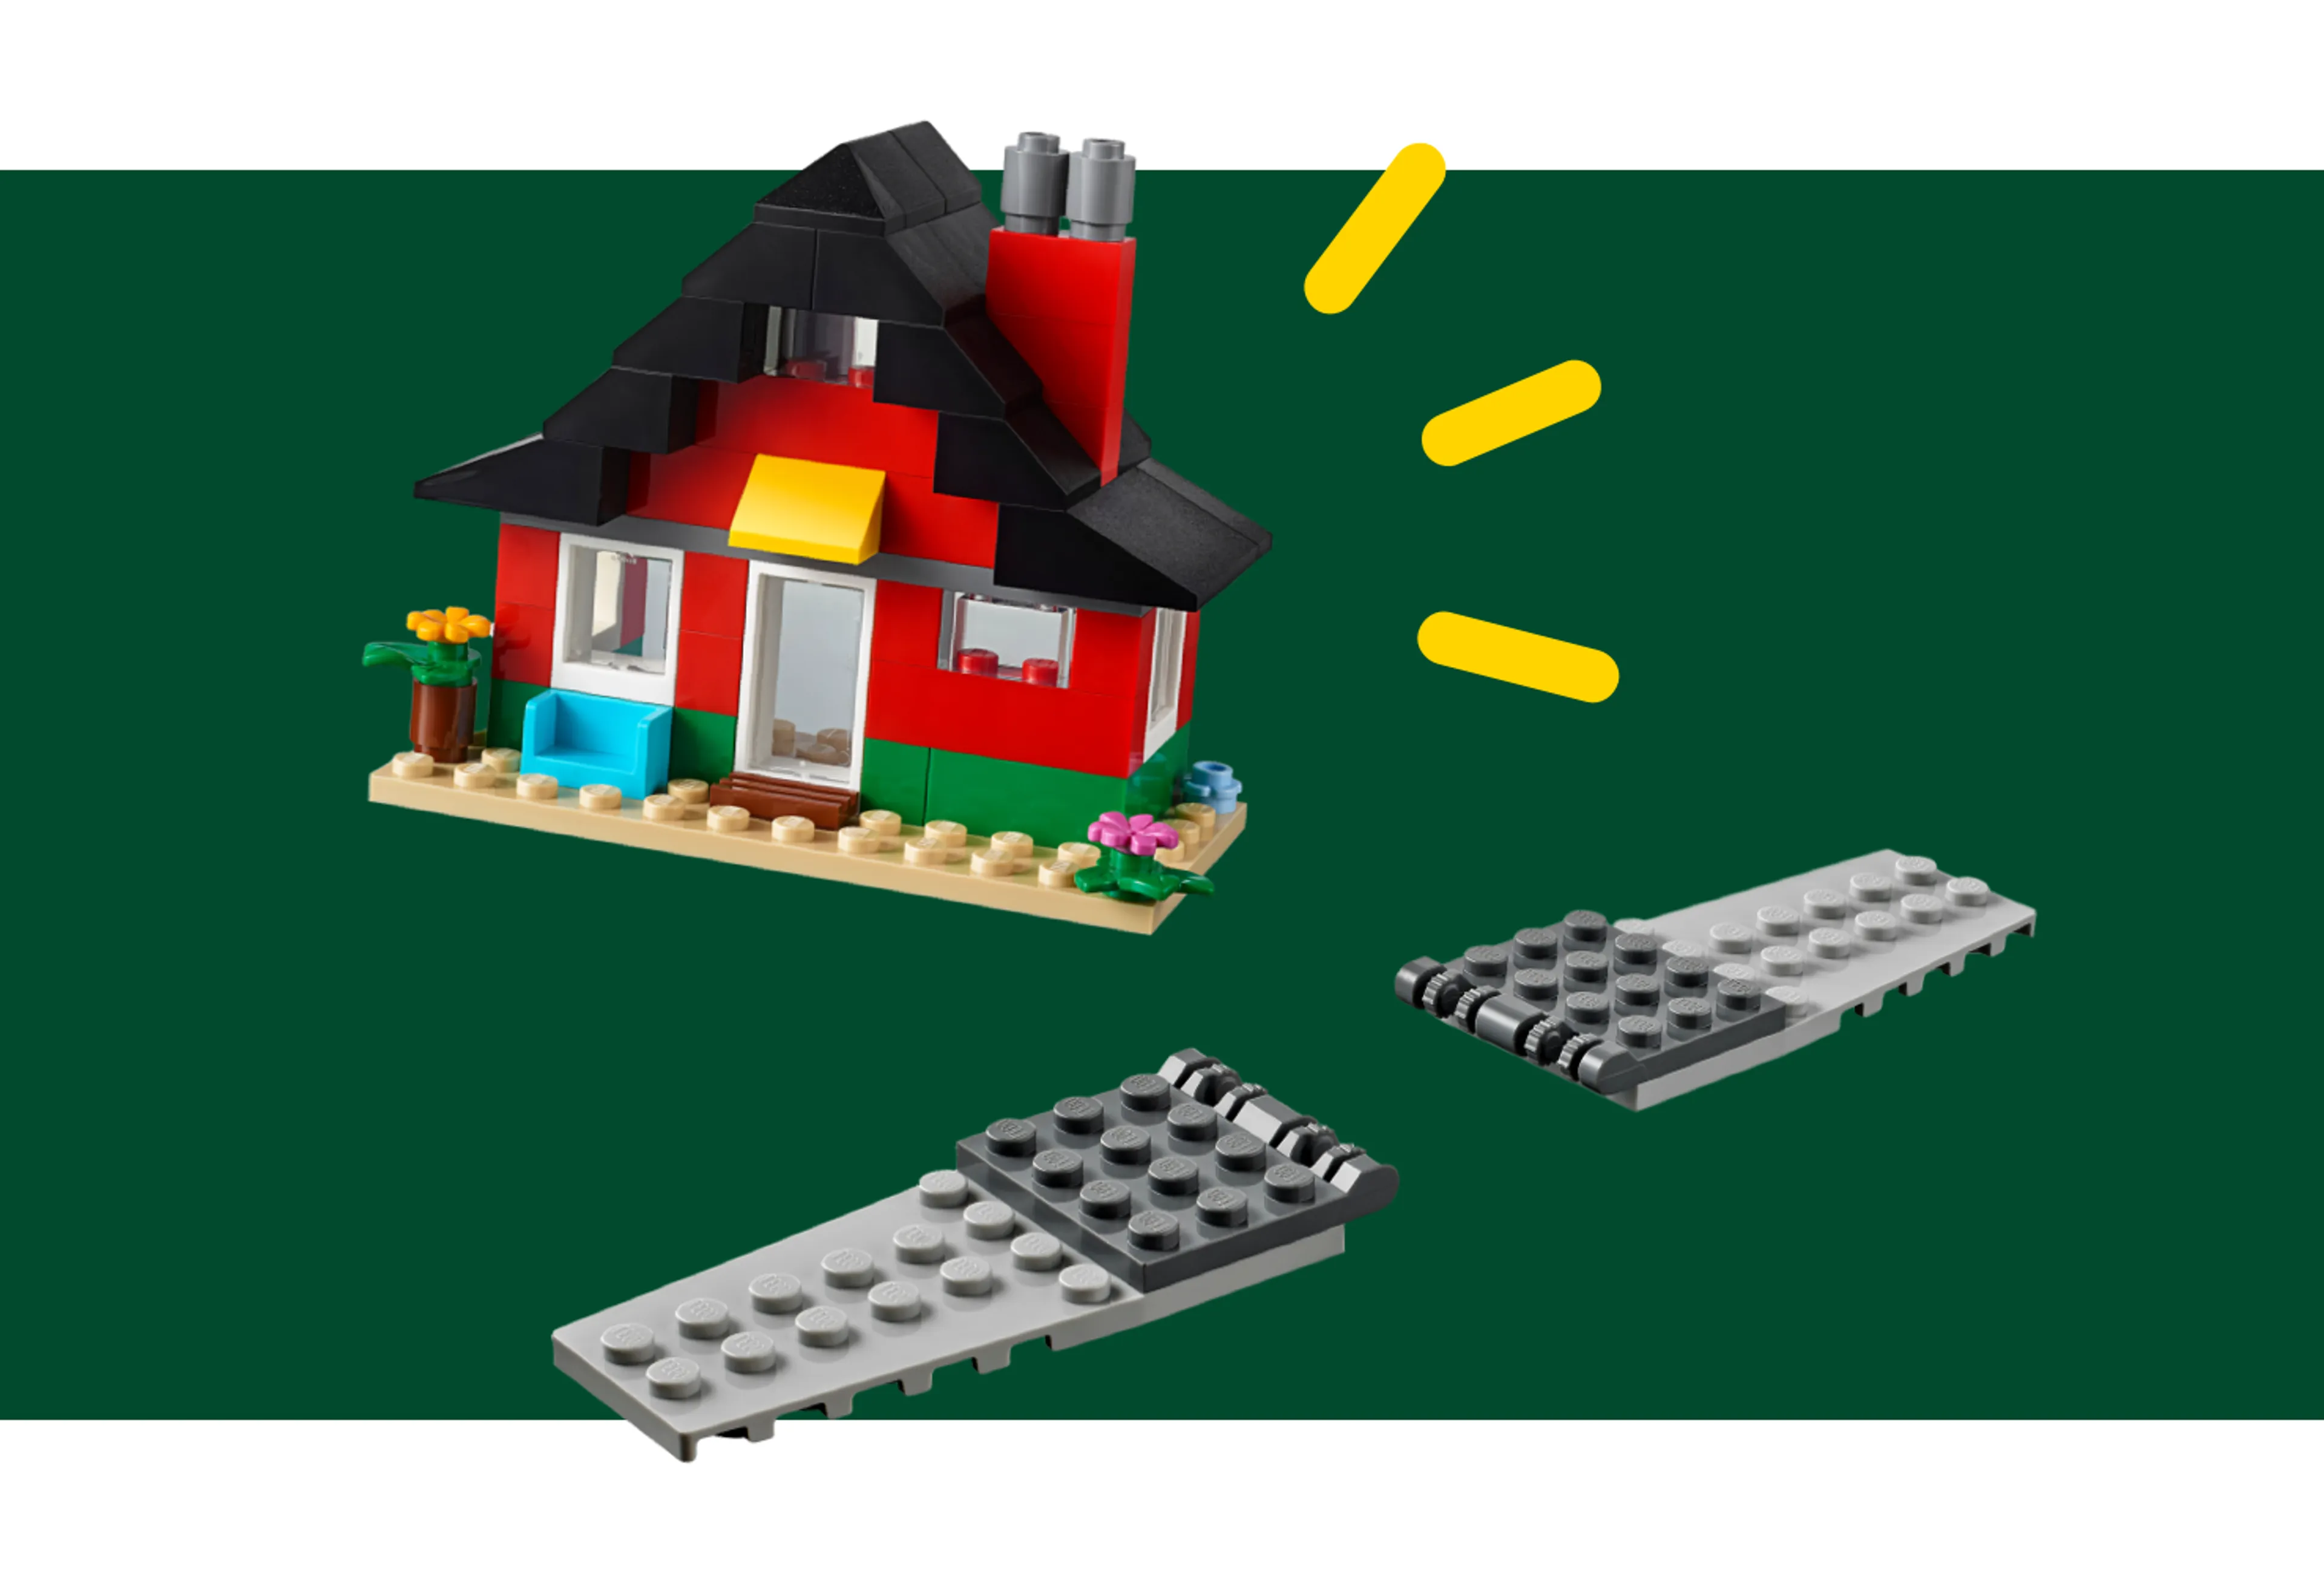 A LEGO house